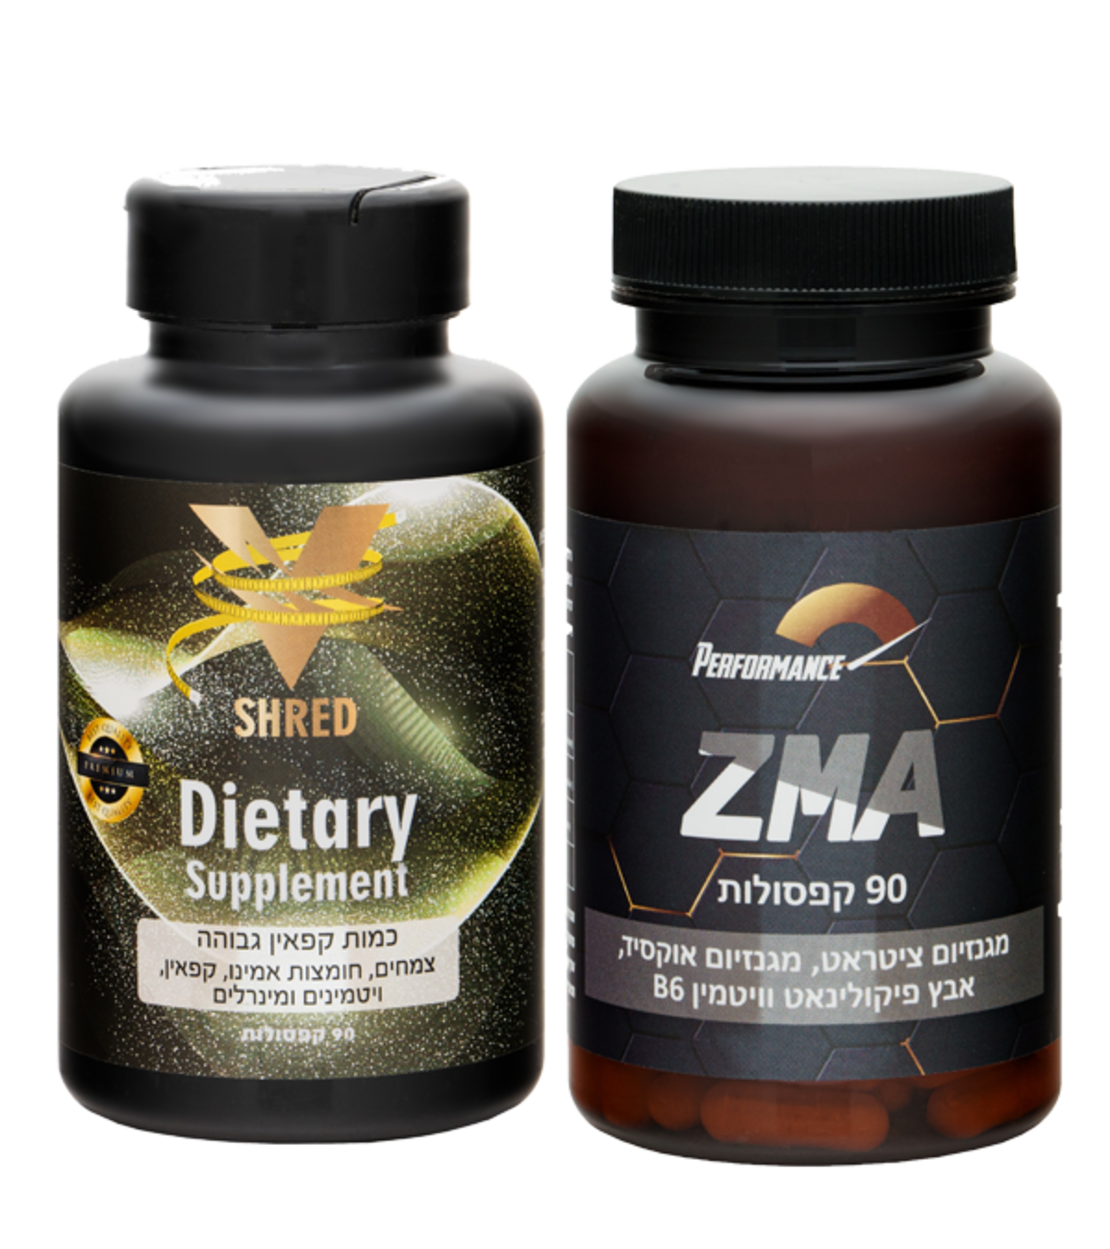 שורף שומן הטוב בעולם ®V Shred Premium + פורמולת ZMA | אבץ מגנזיום וויטמין B6 520 מ